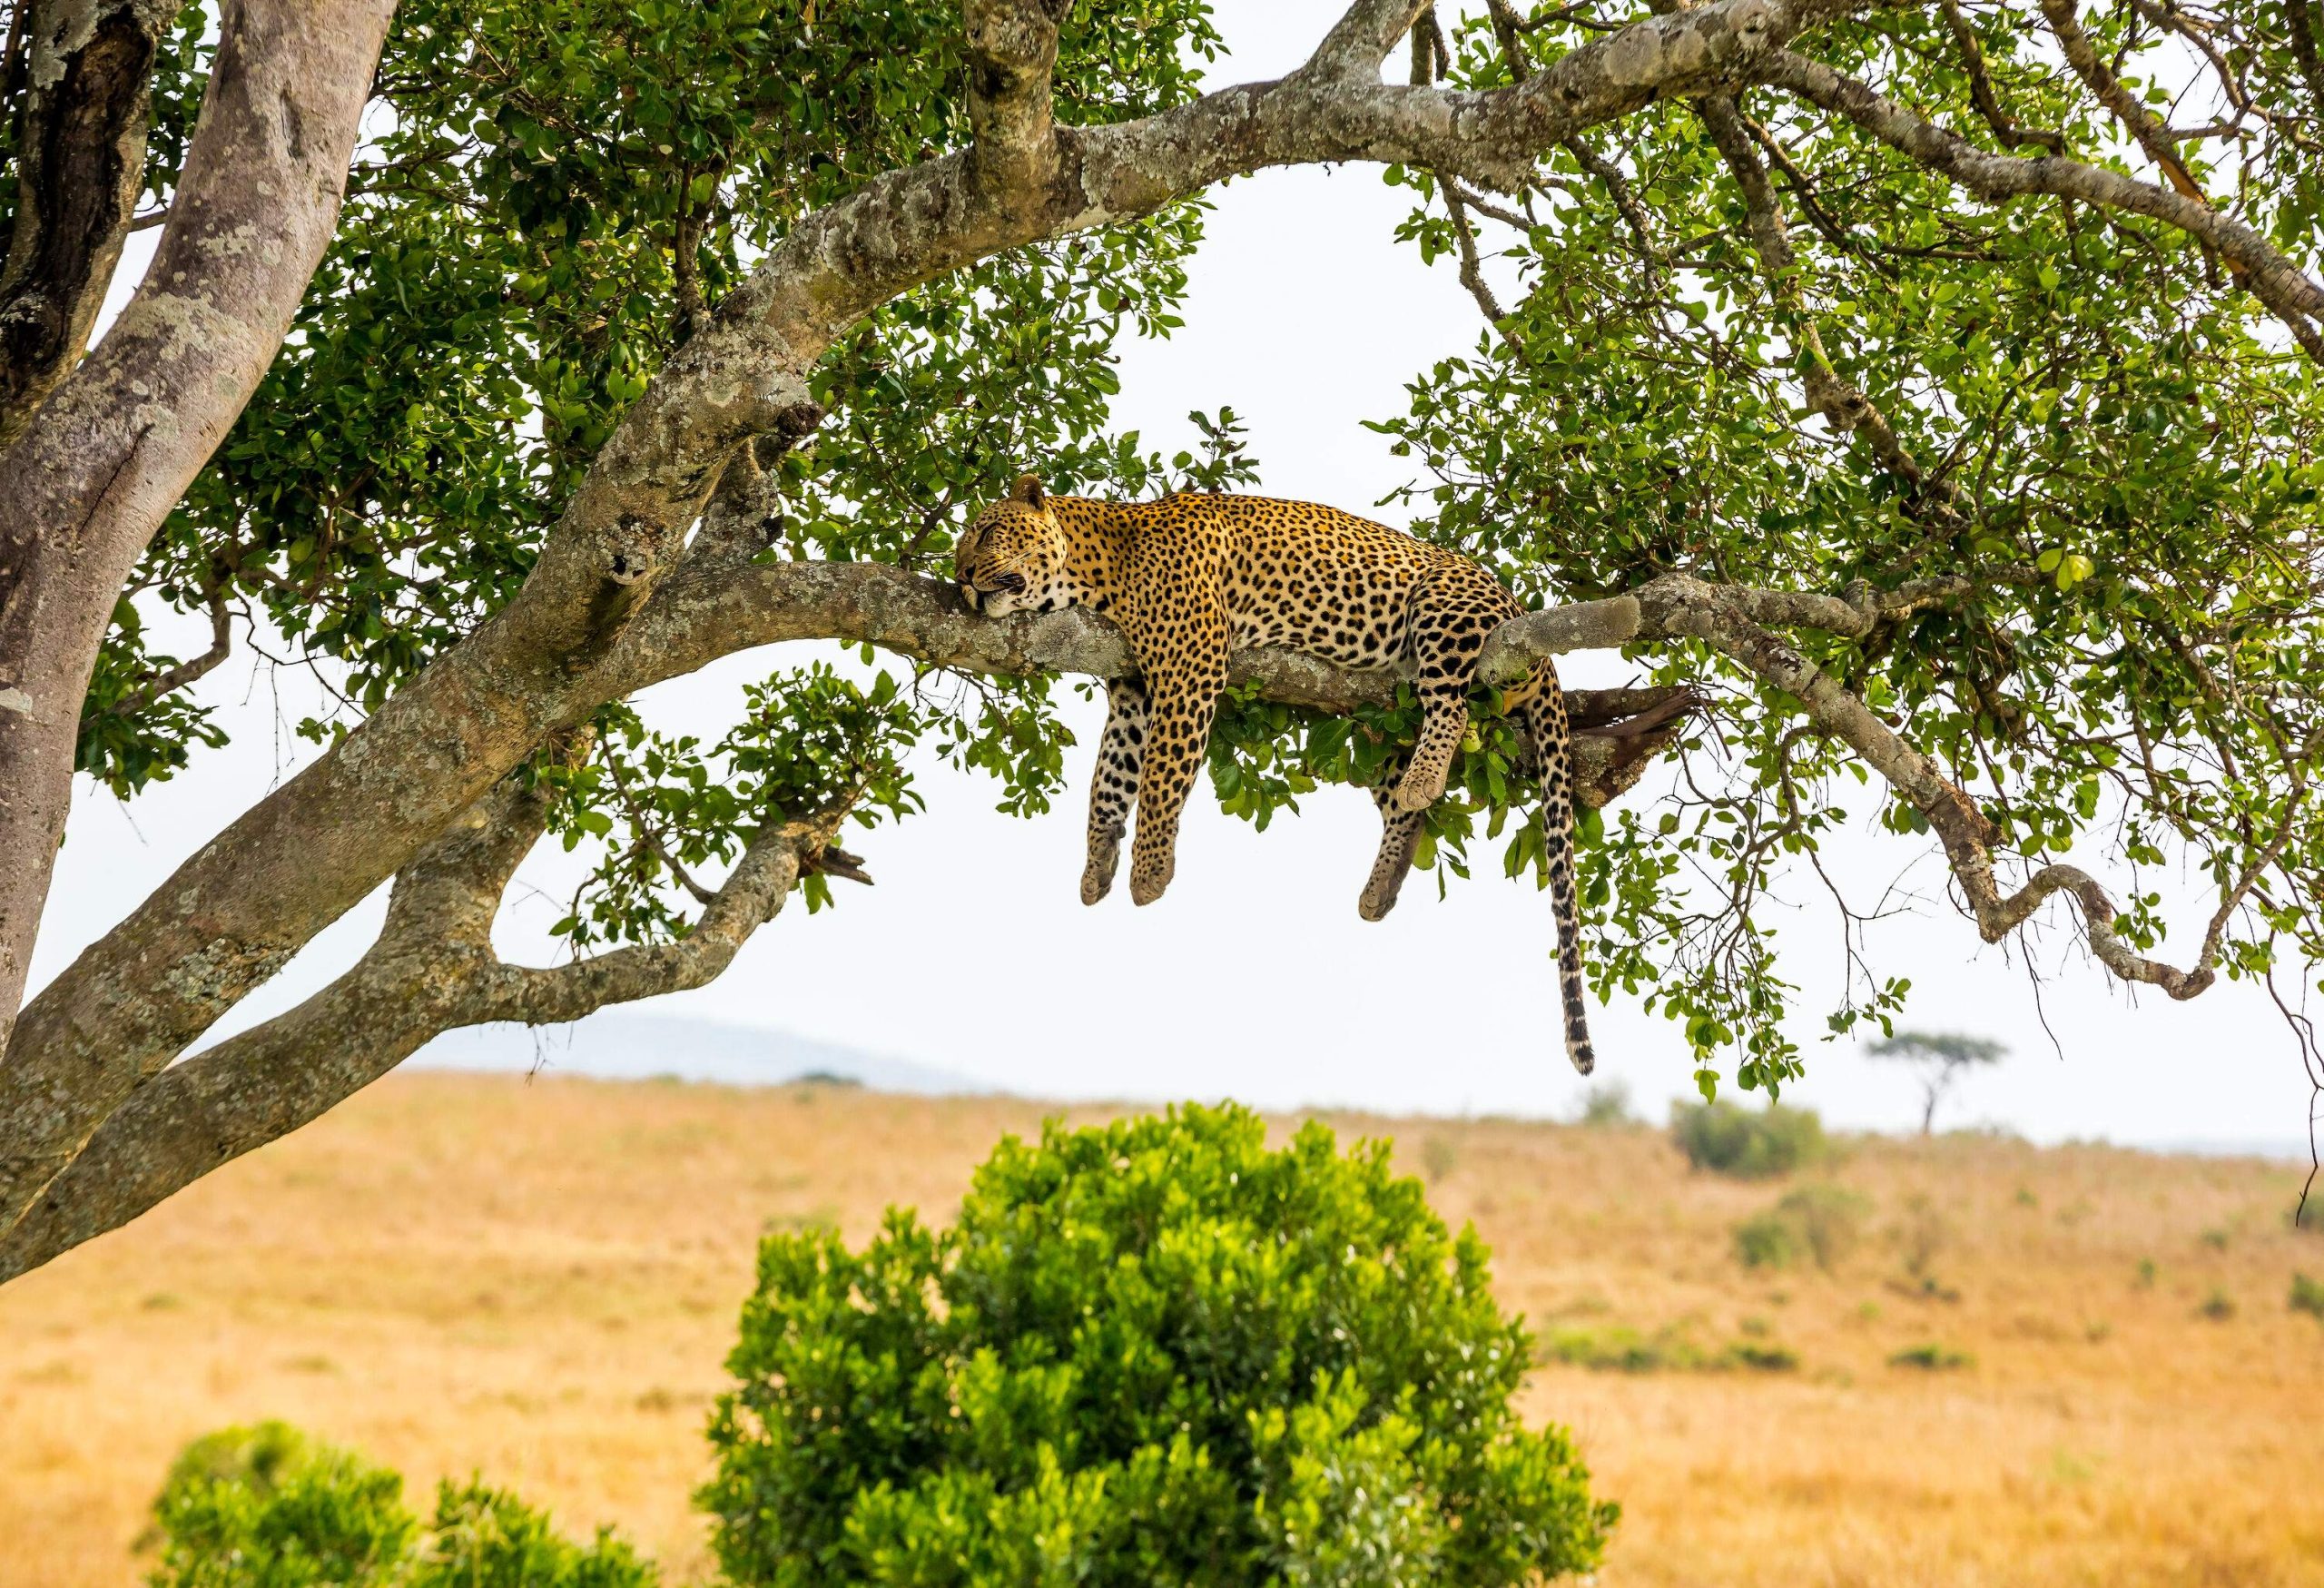 A sleeping leopard on a tree branch.